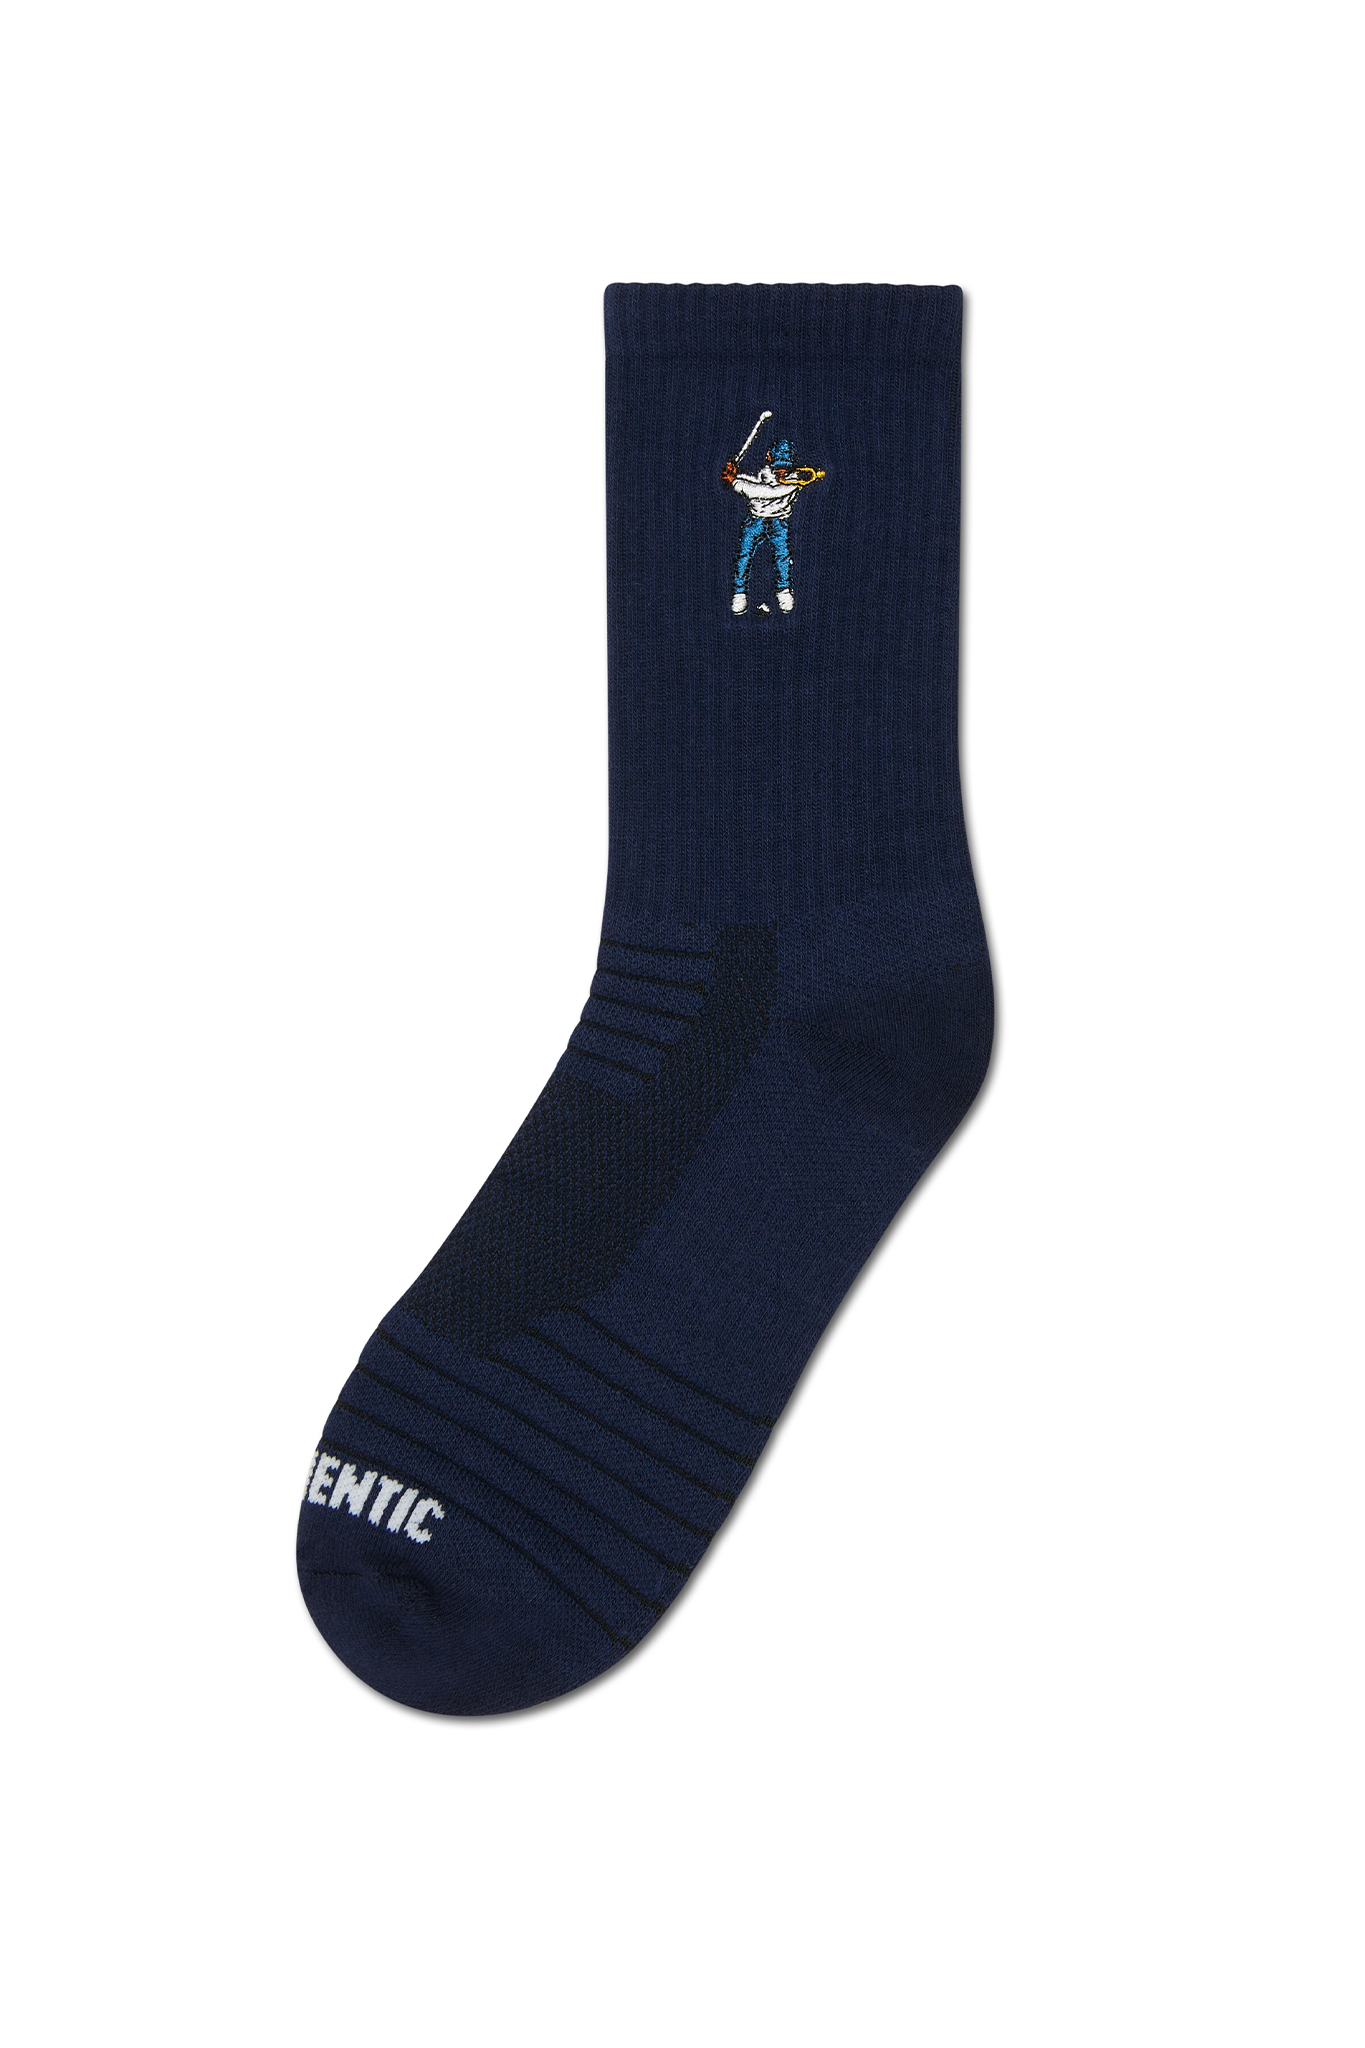 Eastside Golf Calf Height Logo Socks Navy